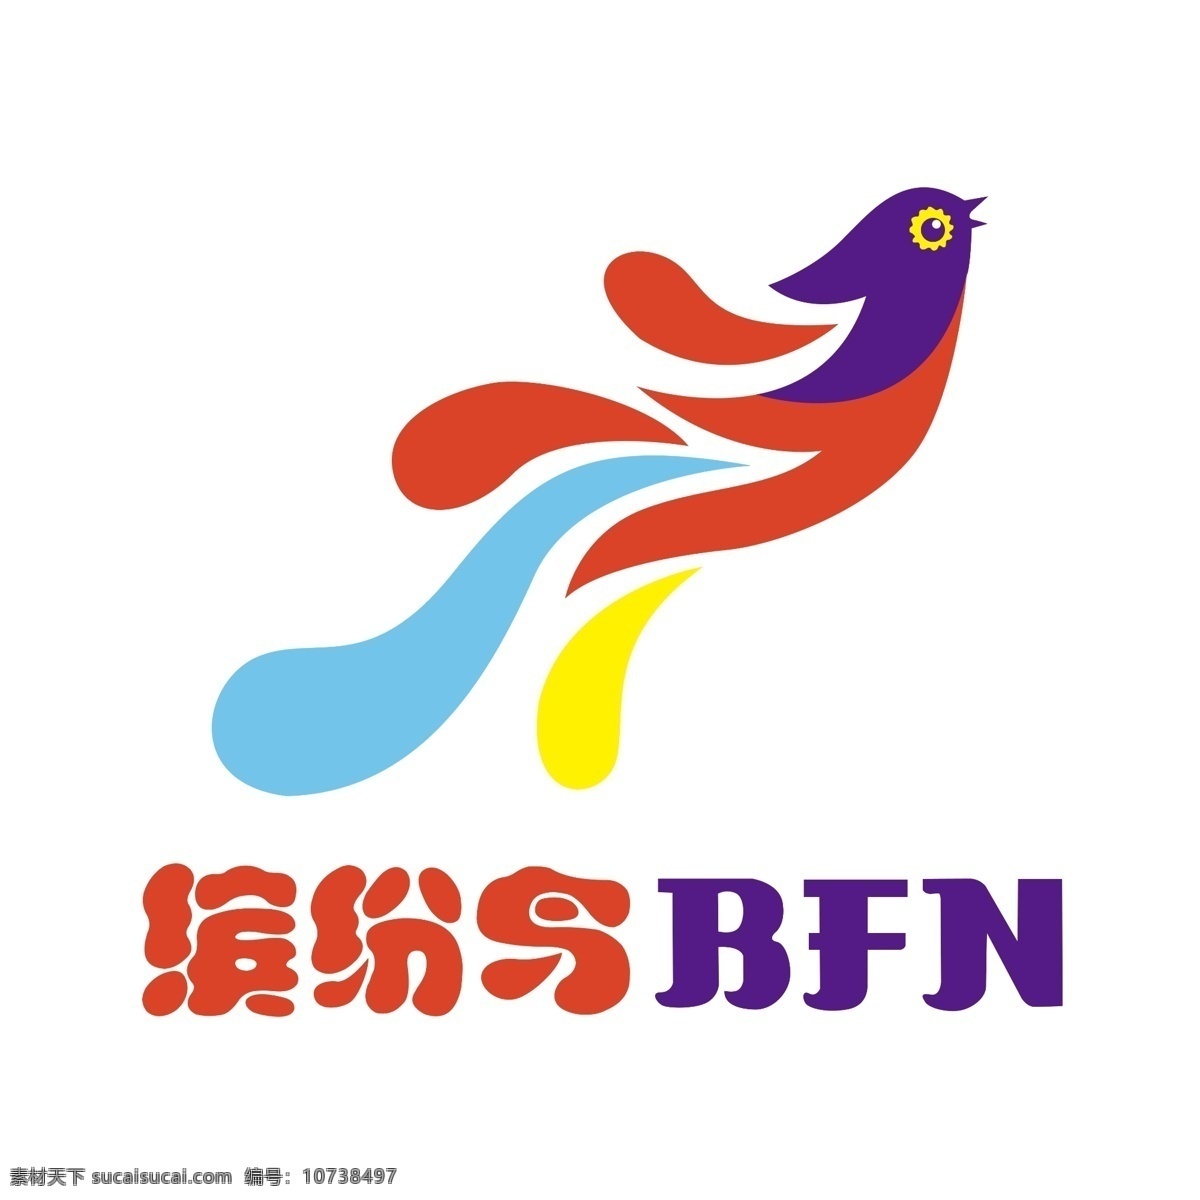 缤纷鸟 bfn logo 彩色鸟 五色鸟 logo设计